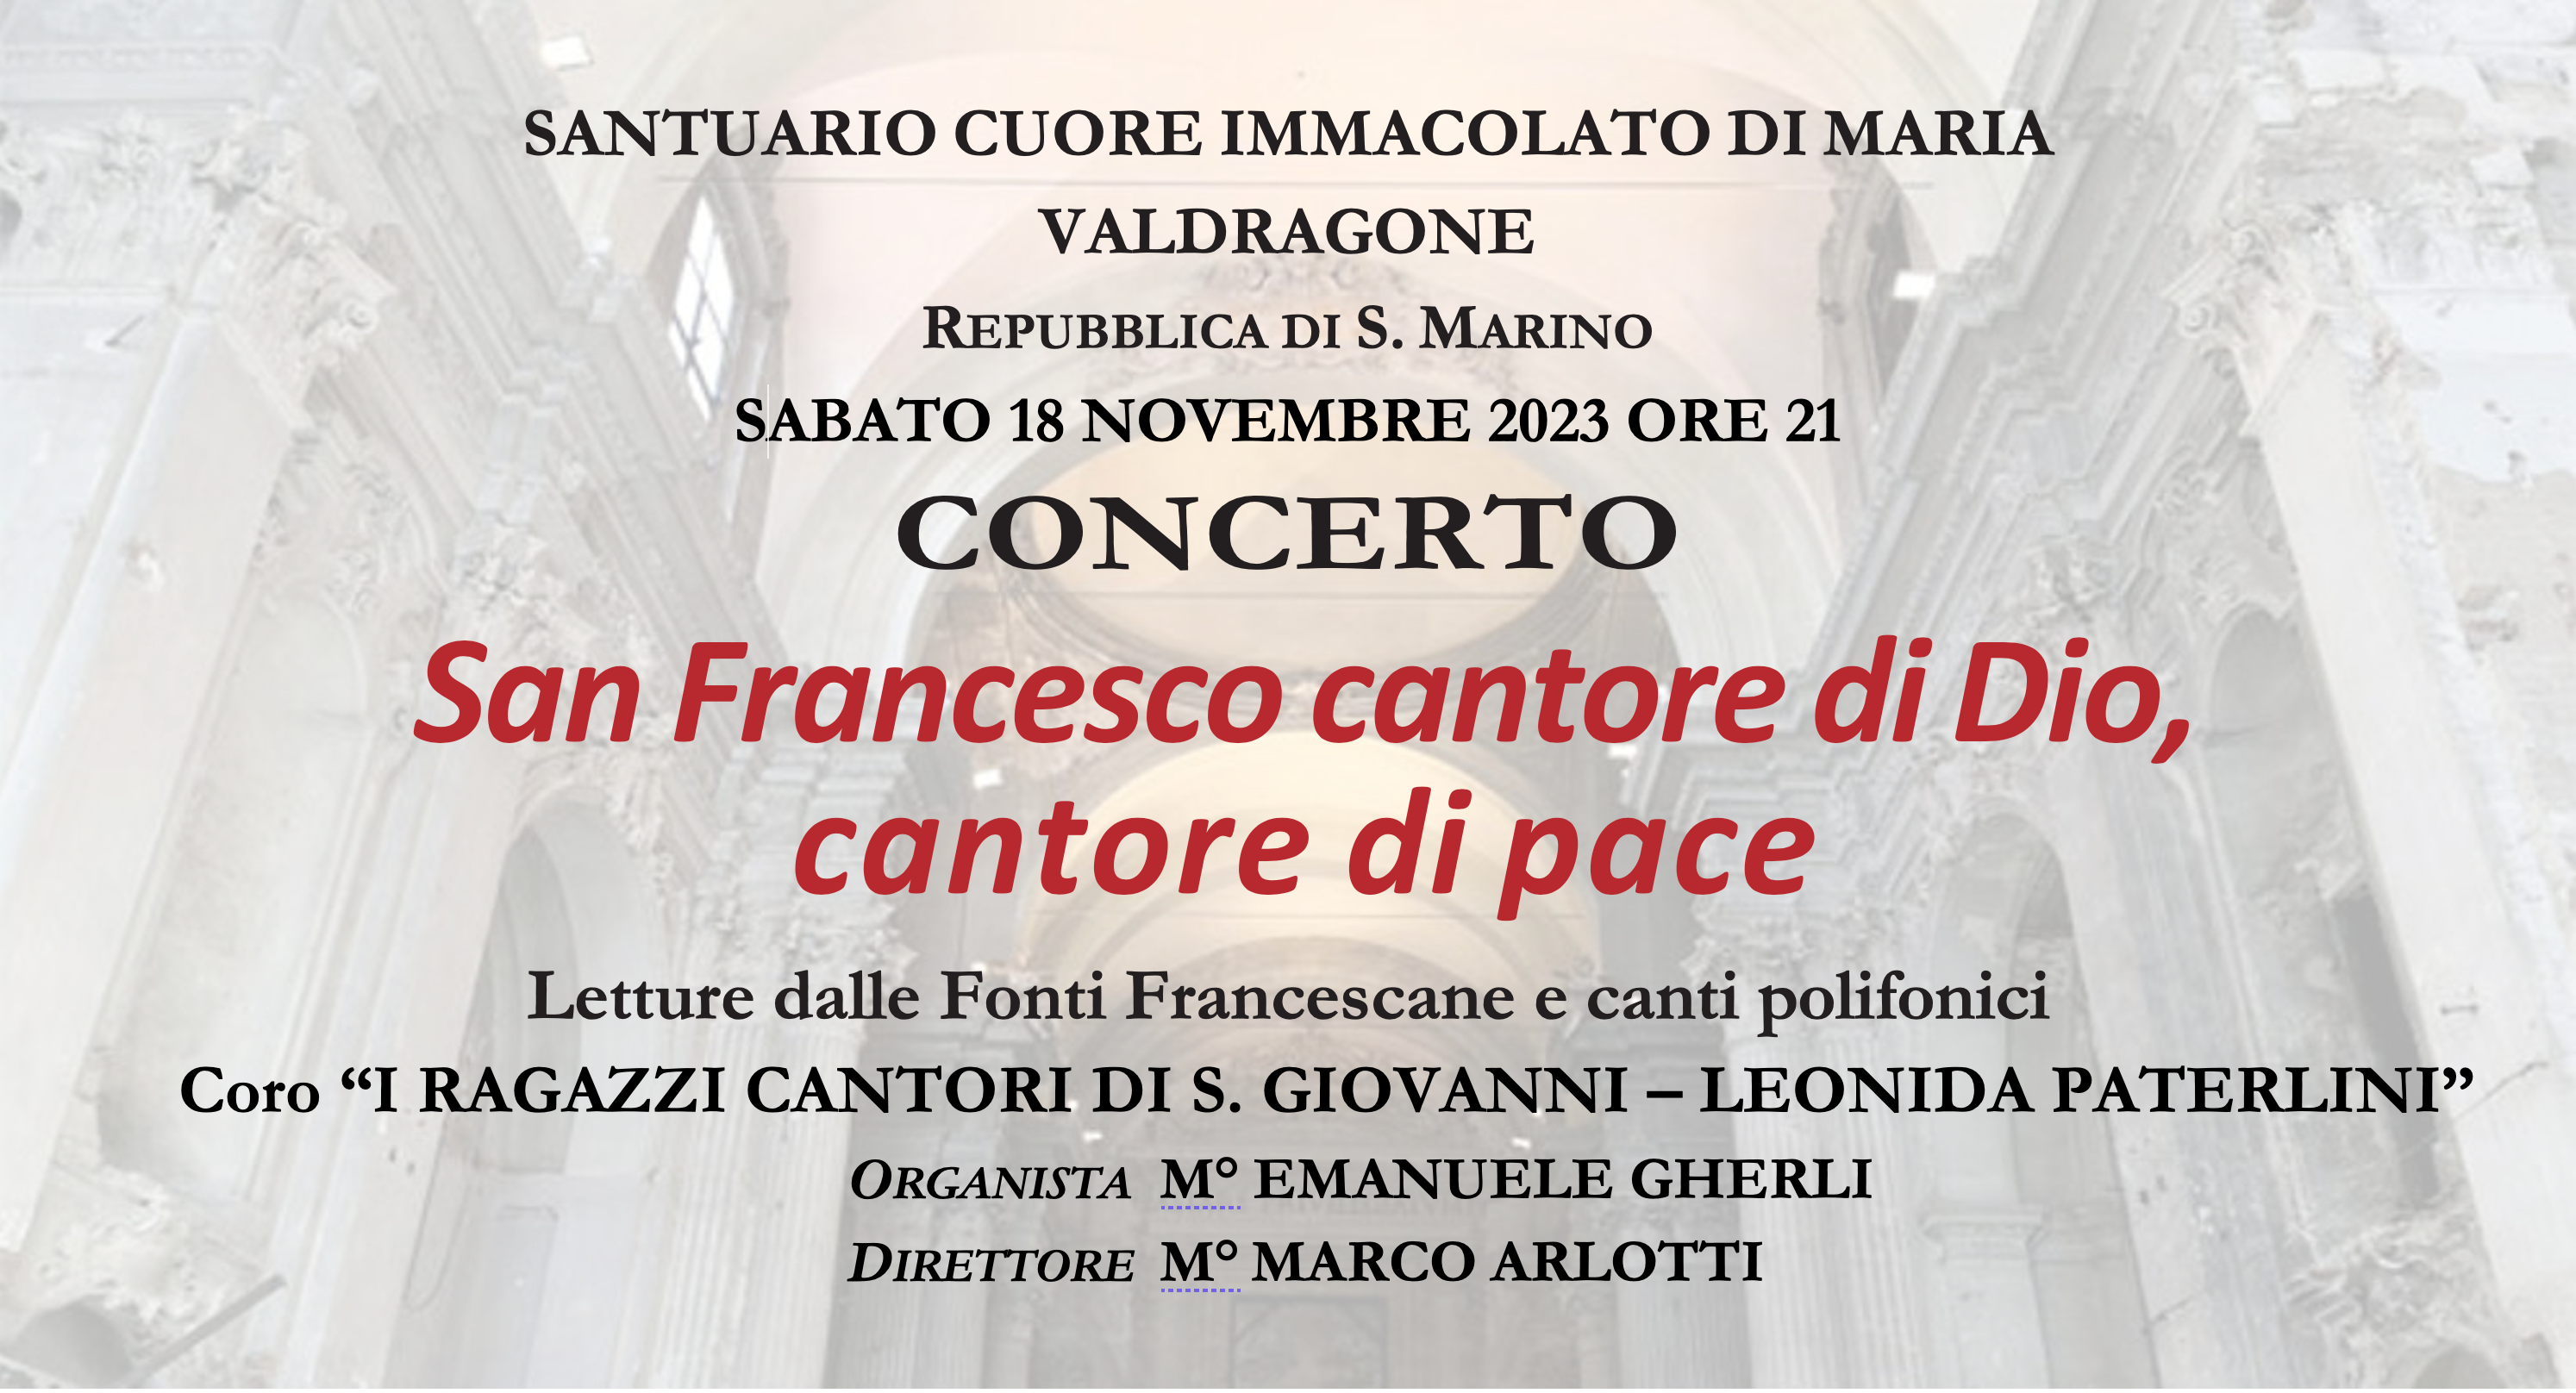 Concerto “San Francesco cantore di Dio, cantore di pace”